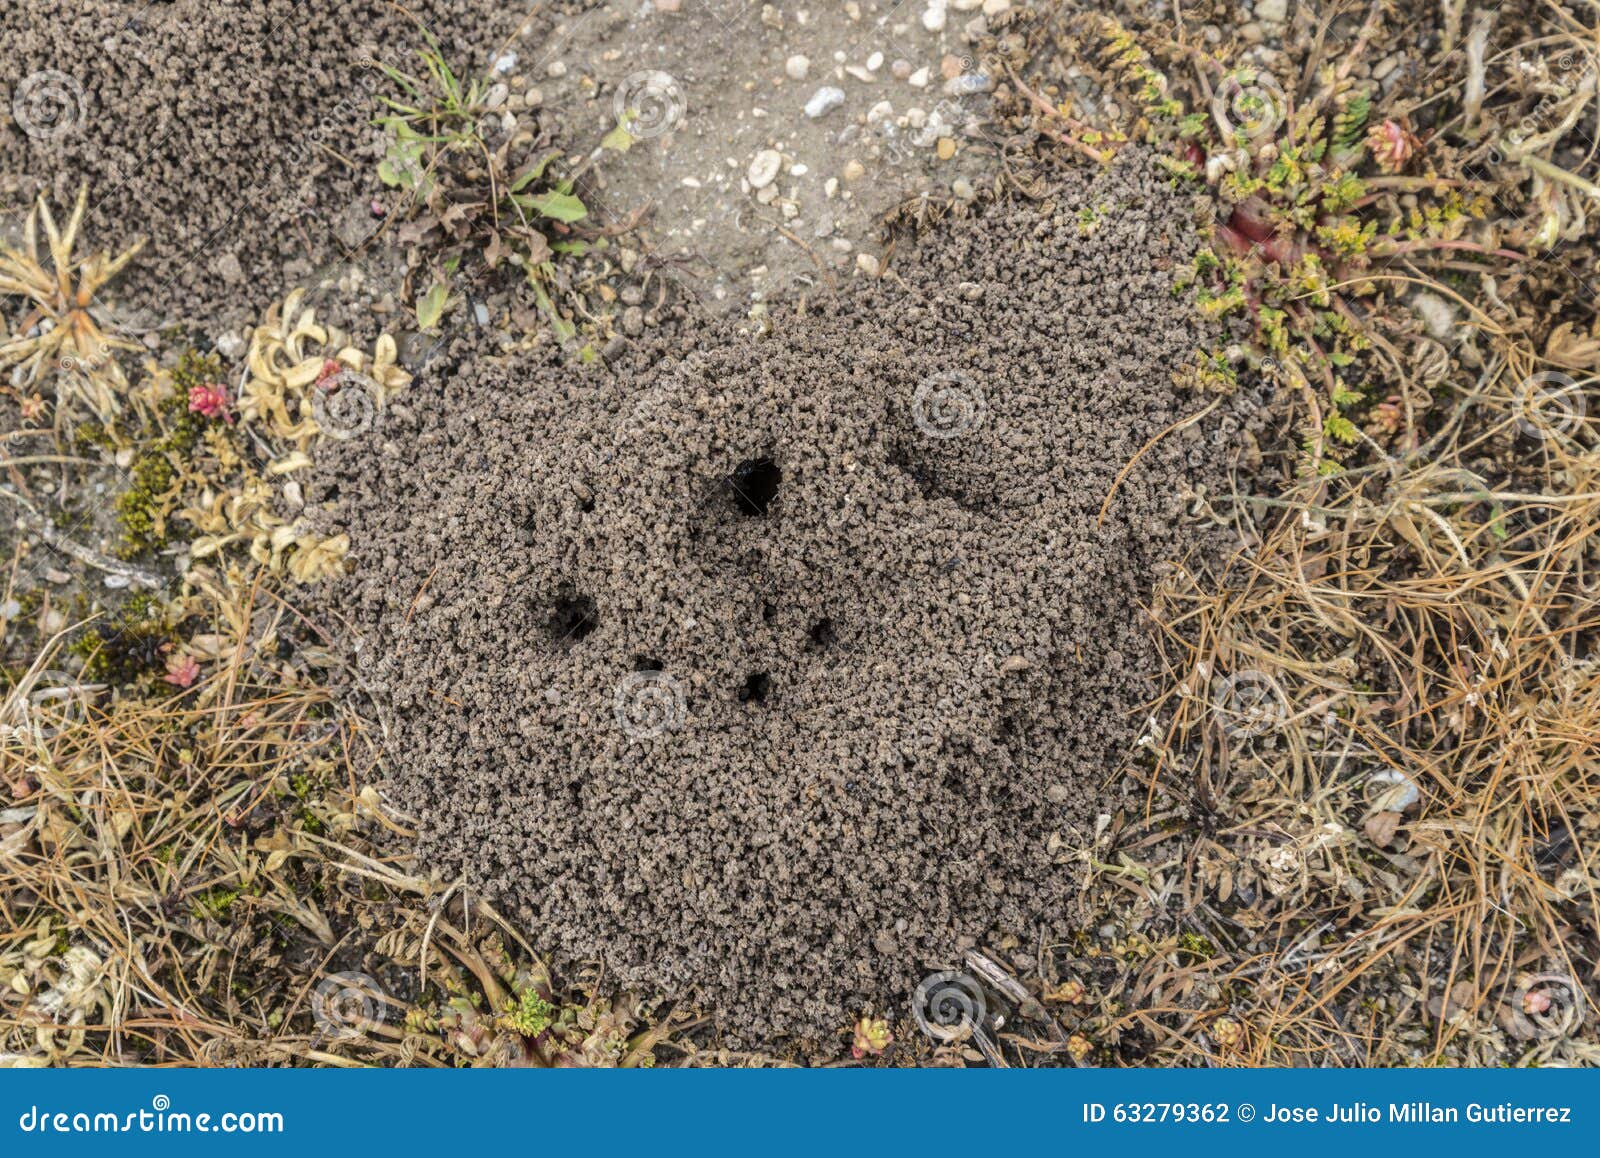 Ameisenhaufen stockfoto. Bild von haus, loch, aufbau - 63279362